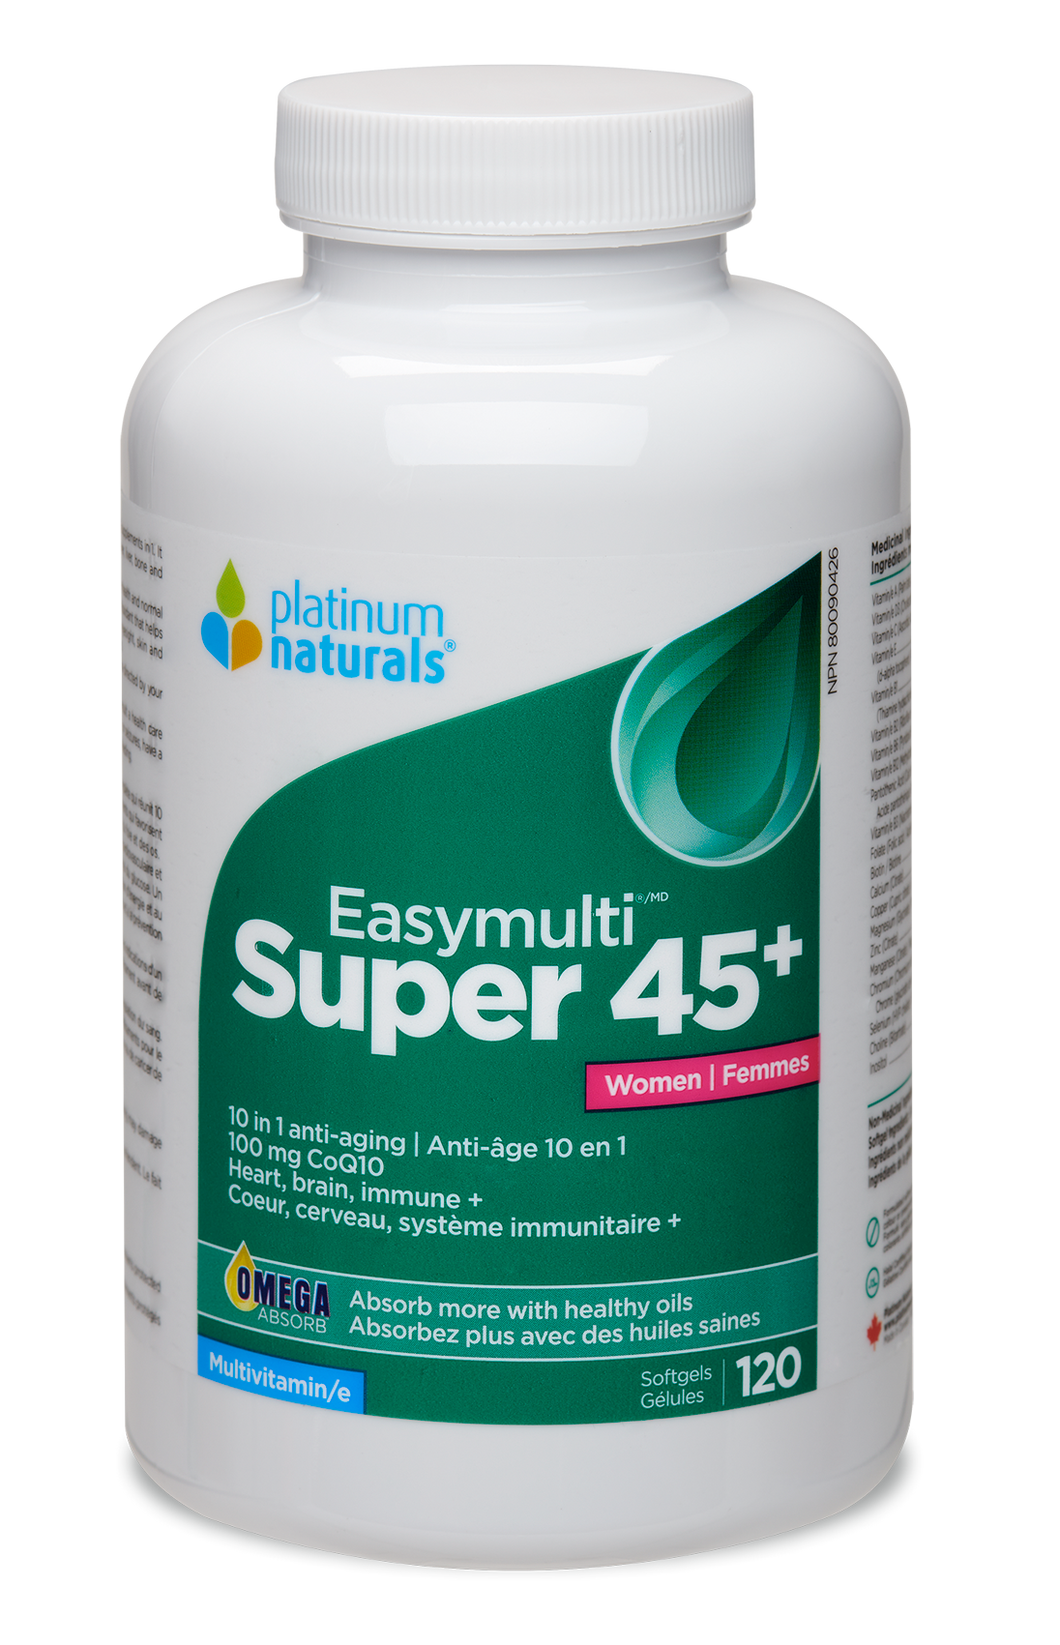 Super Easymulti 45+ for Women